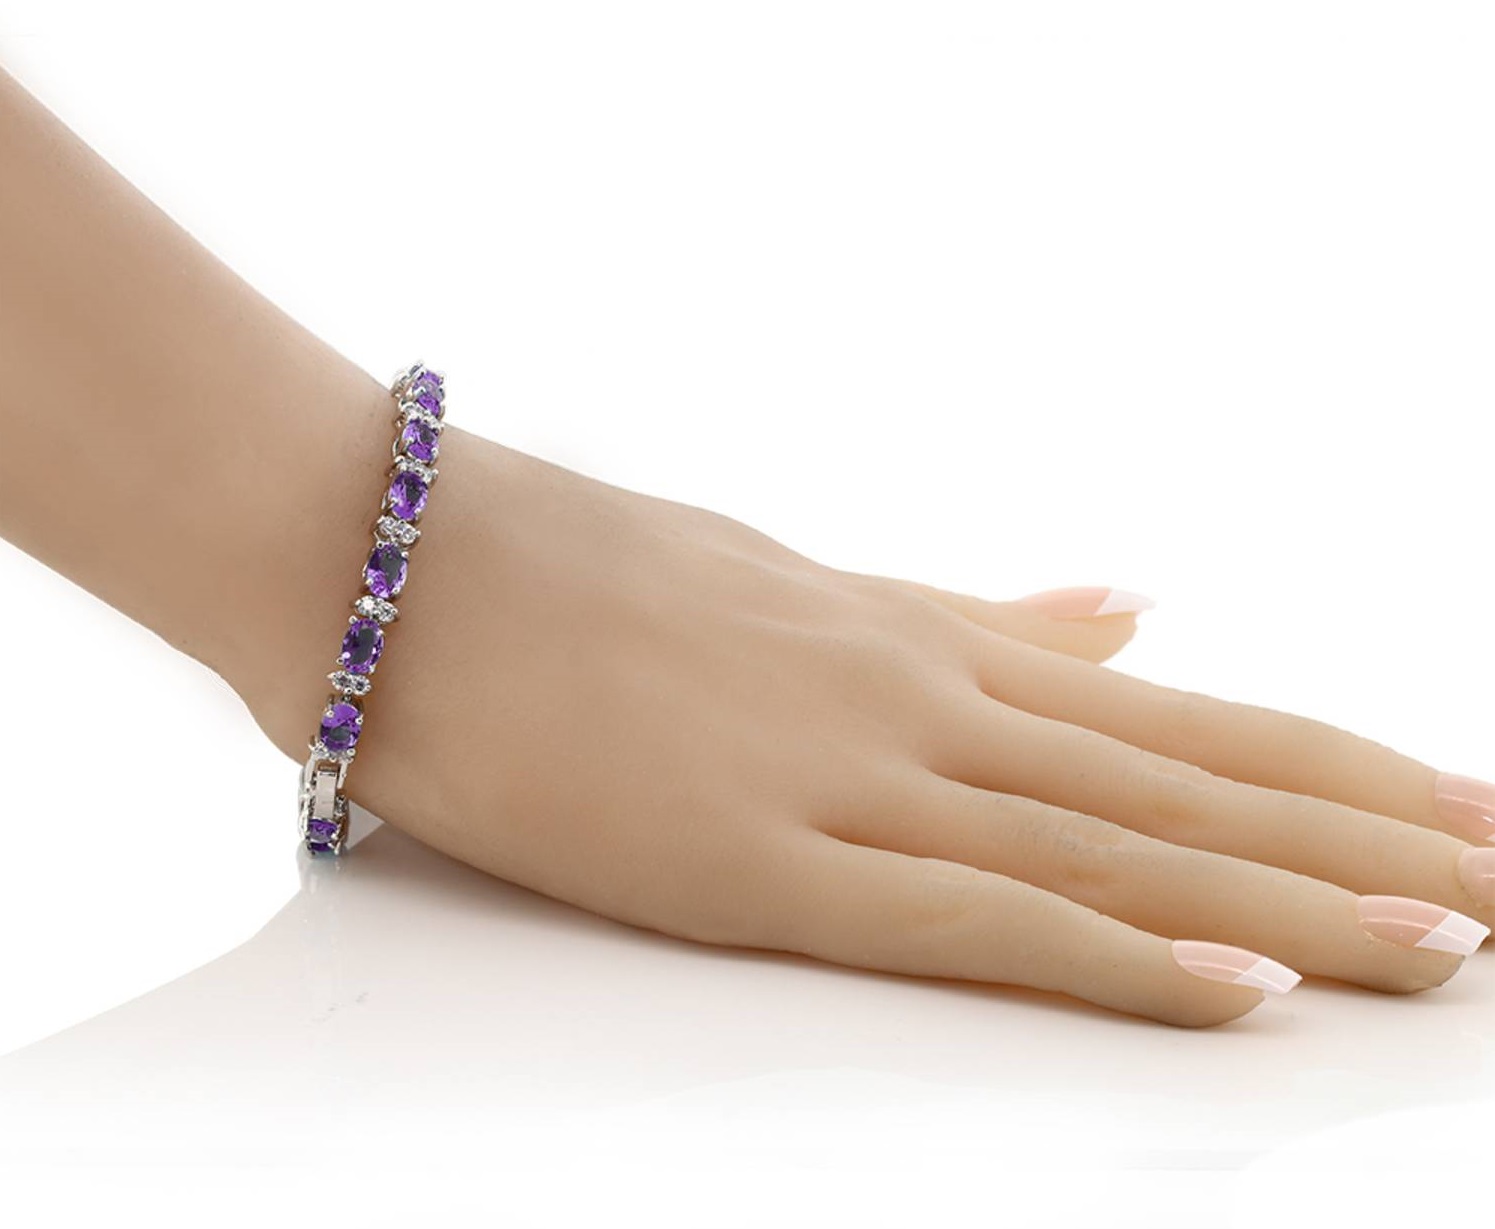 Gemstone Bracelet. 1 Top 10 Gift Ideas for Women Over 50 - 7